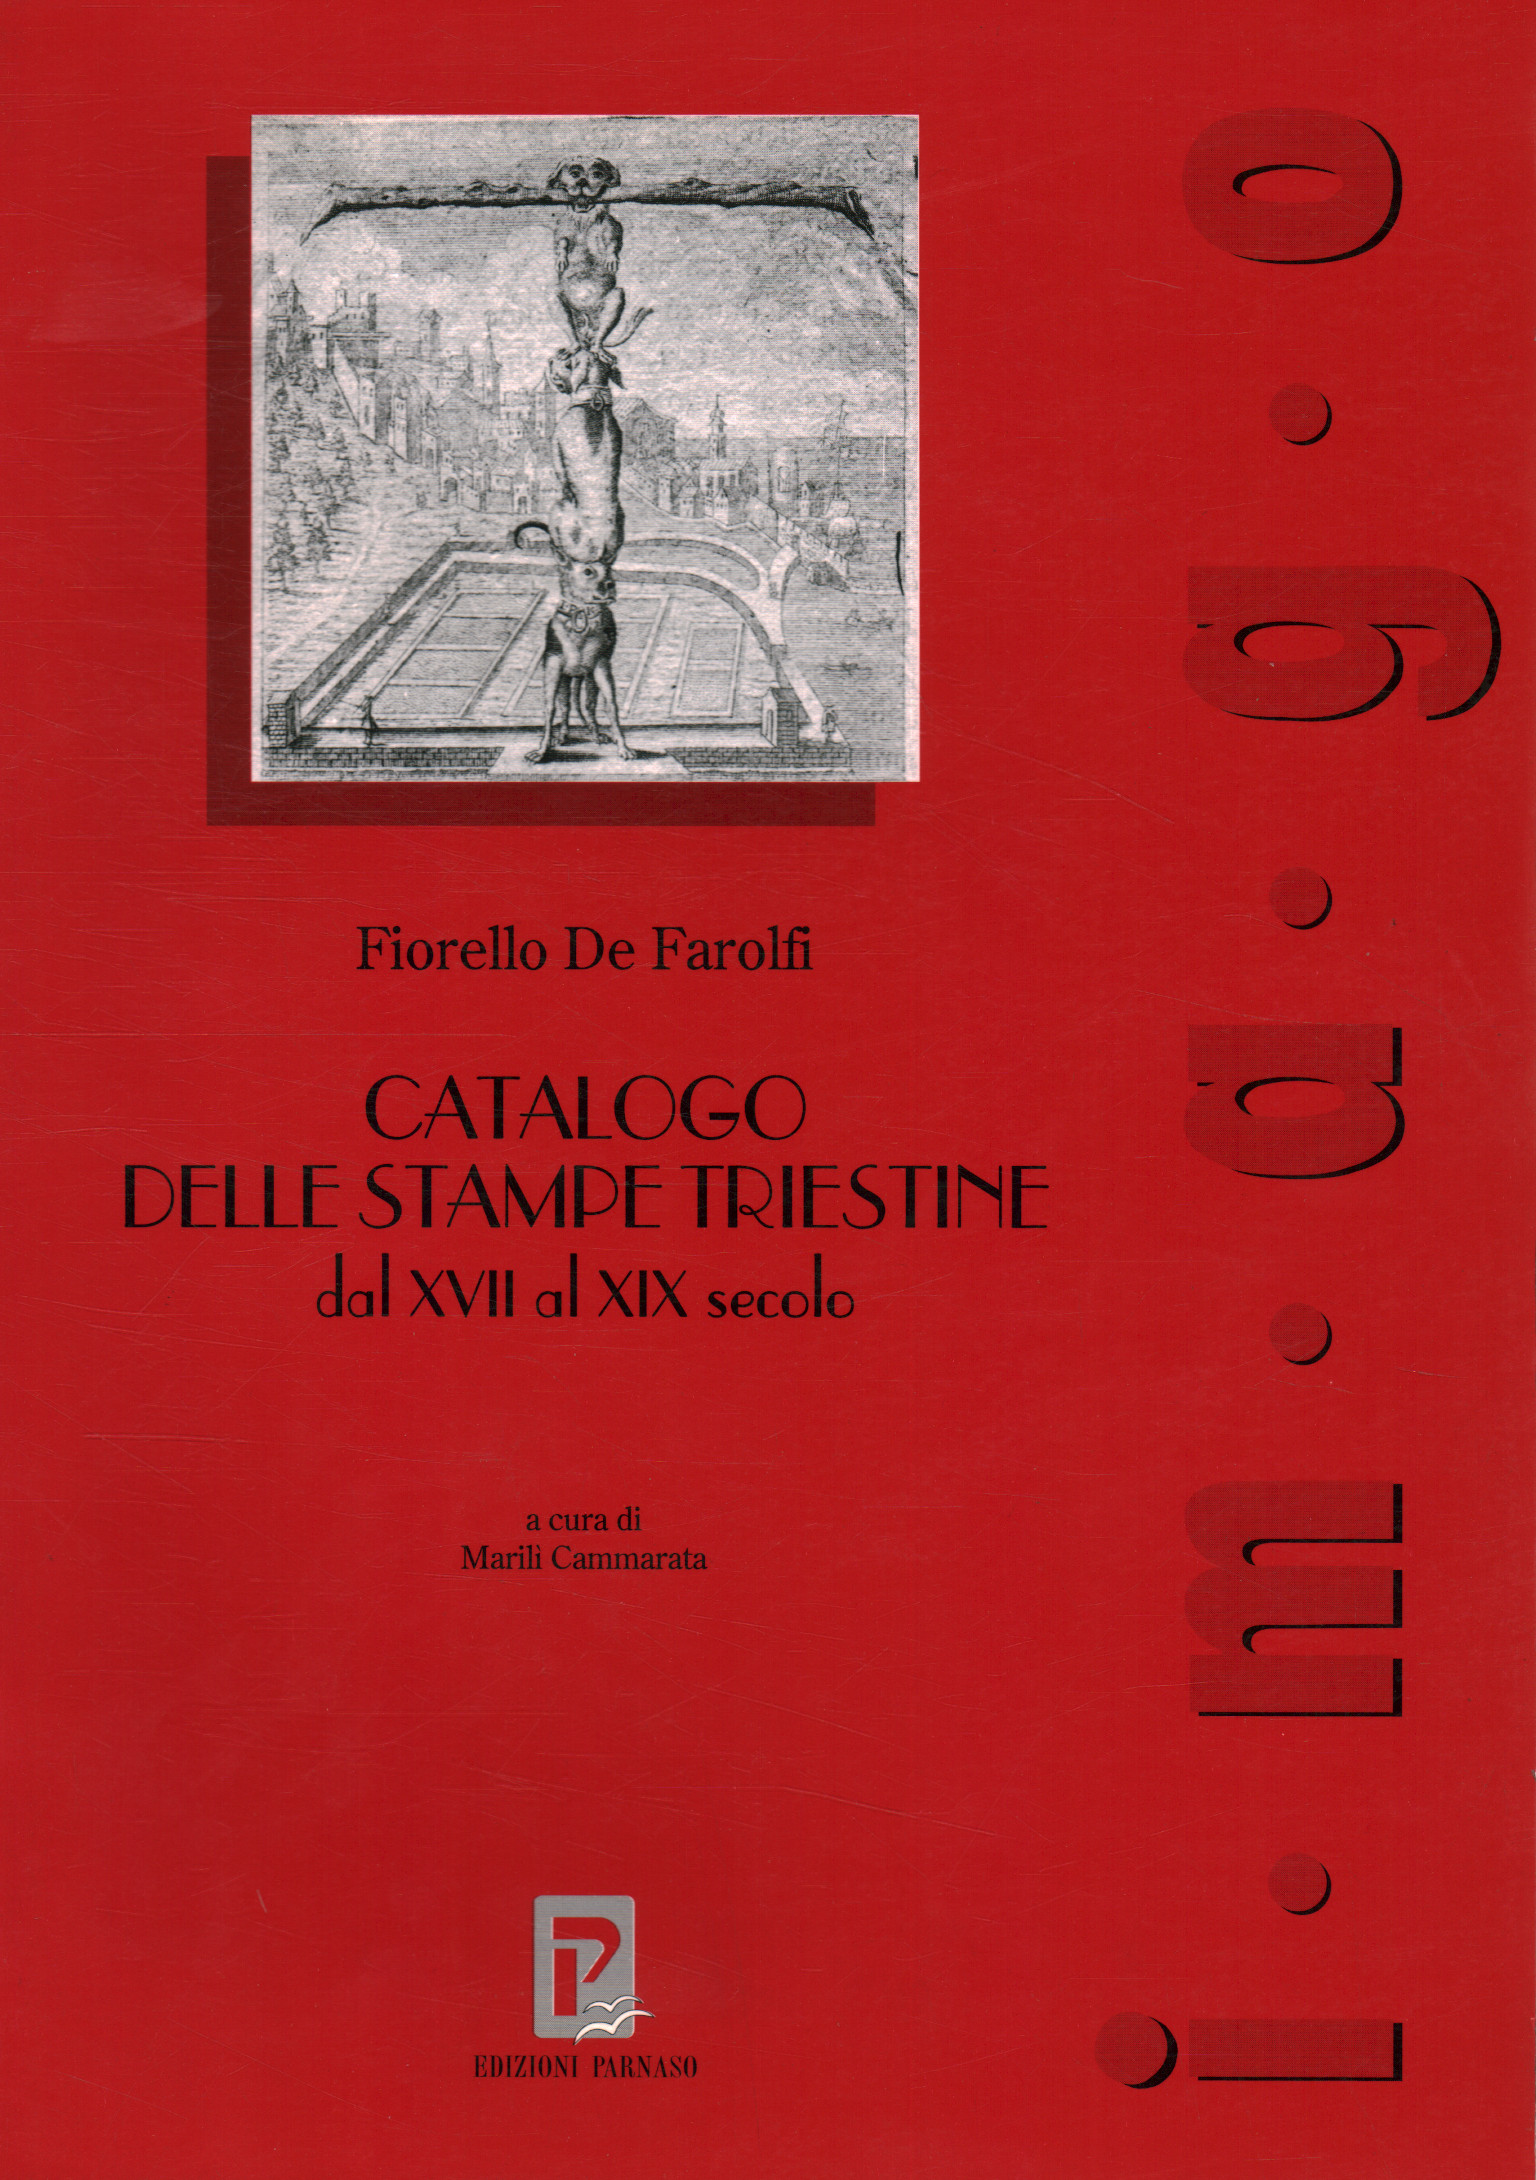 Catalogue des estampes de Trieste du XVII